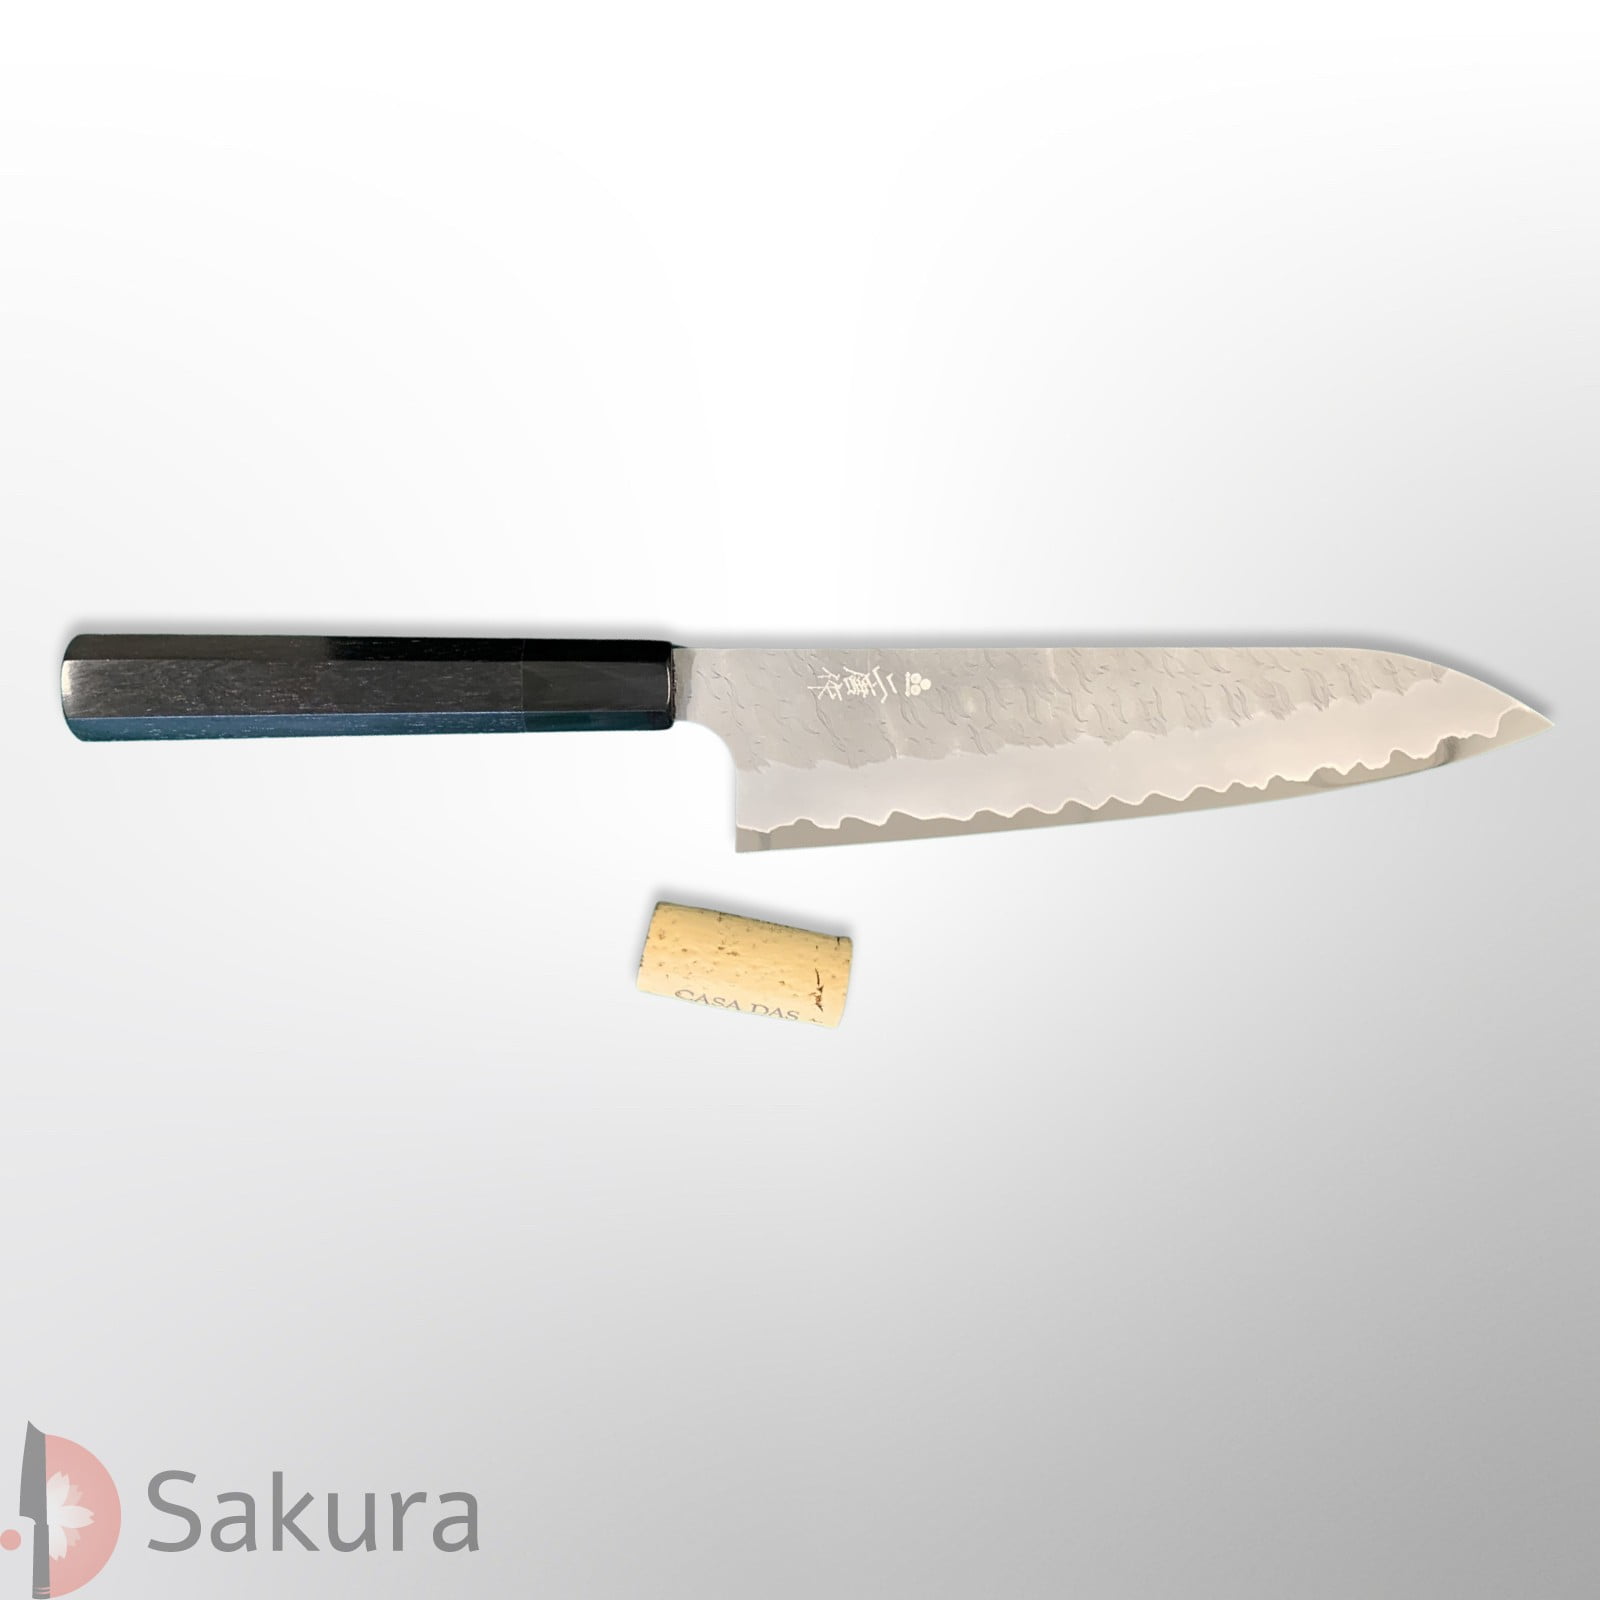 סכין שף רב-תכליתית גִּיוּטוֹ 210מ״מ מחושלת בעבודת יד 3 שכבות: פלדת פחמן יפנית מתקדמת Aogami Super גימור מט מלוטש עם ריקוע פטיש ניגארה יפן SKNIGAASMTGYU2116